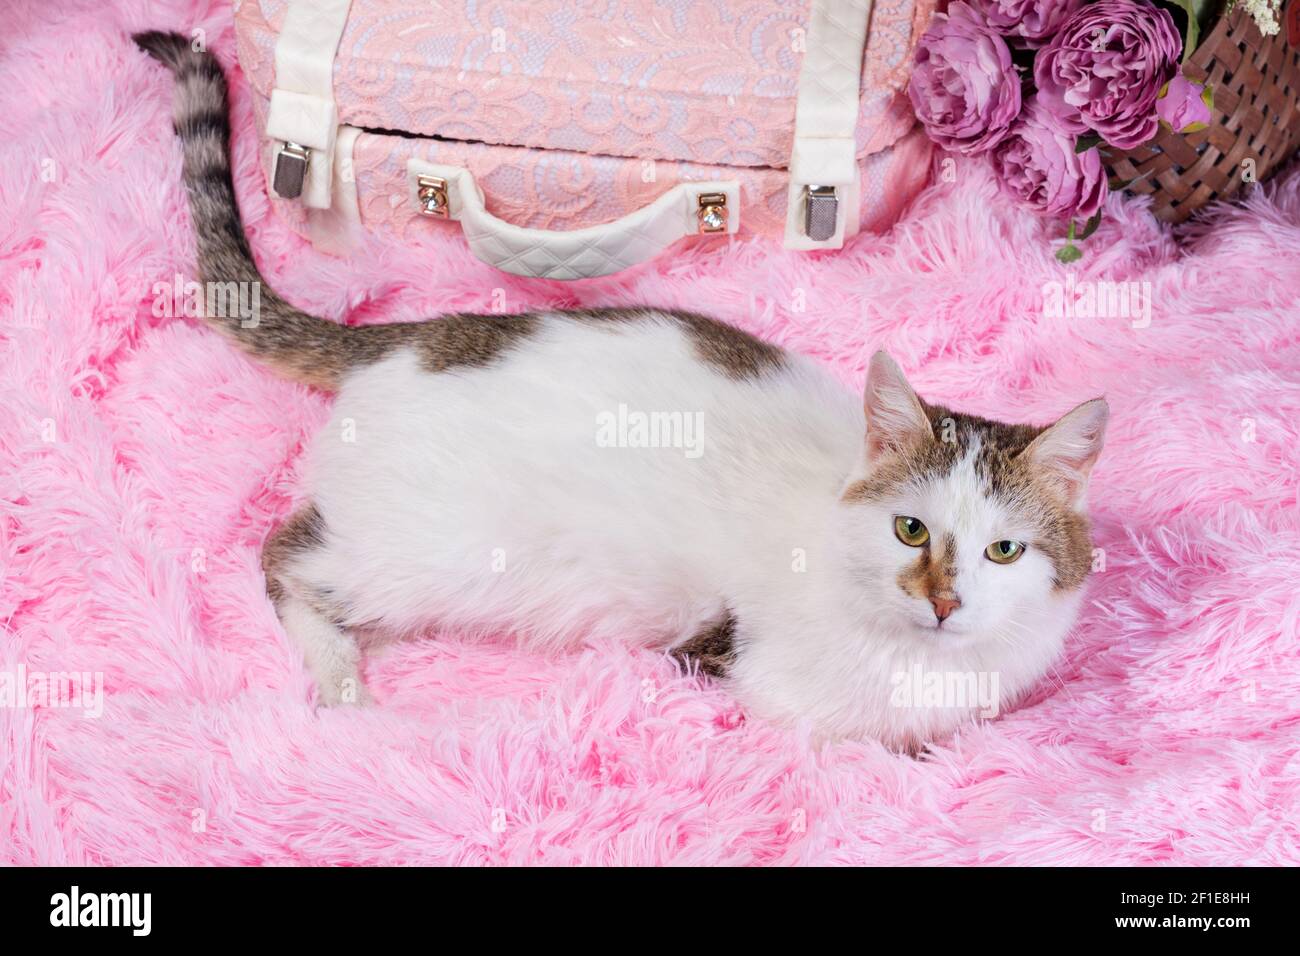 Flach Lay weiß mit Flecken Katze auf rosa Kunstfell Mit einem dekorativen Koffer und einem Blumenstrauß Ein Korbkorb auf einem korallenen Hintergrund Stockfoto